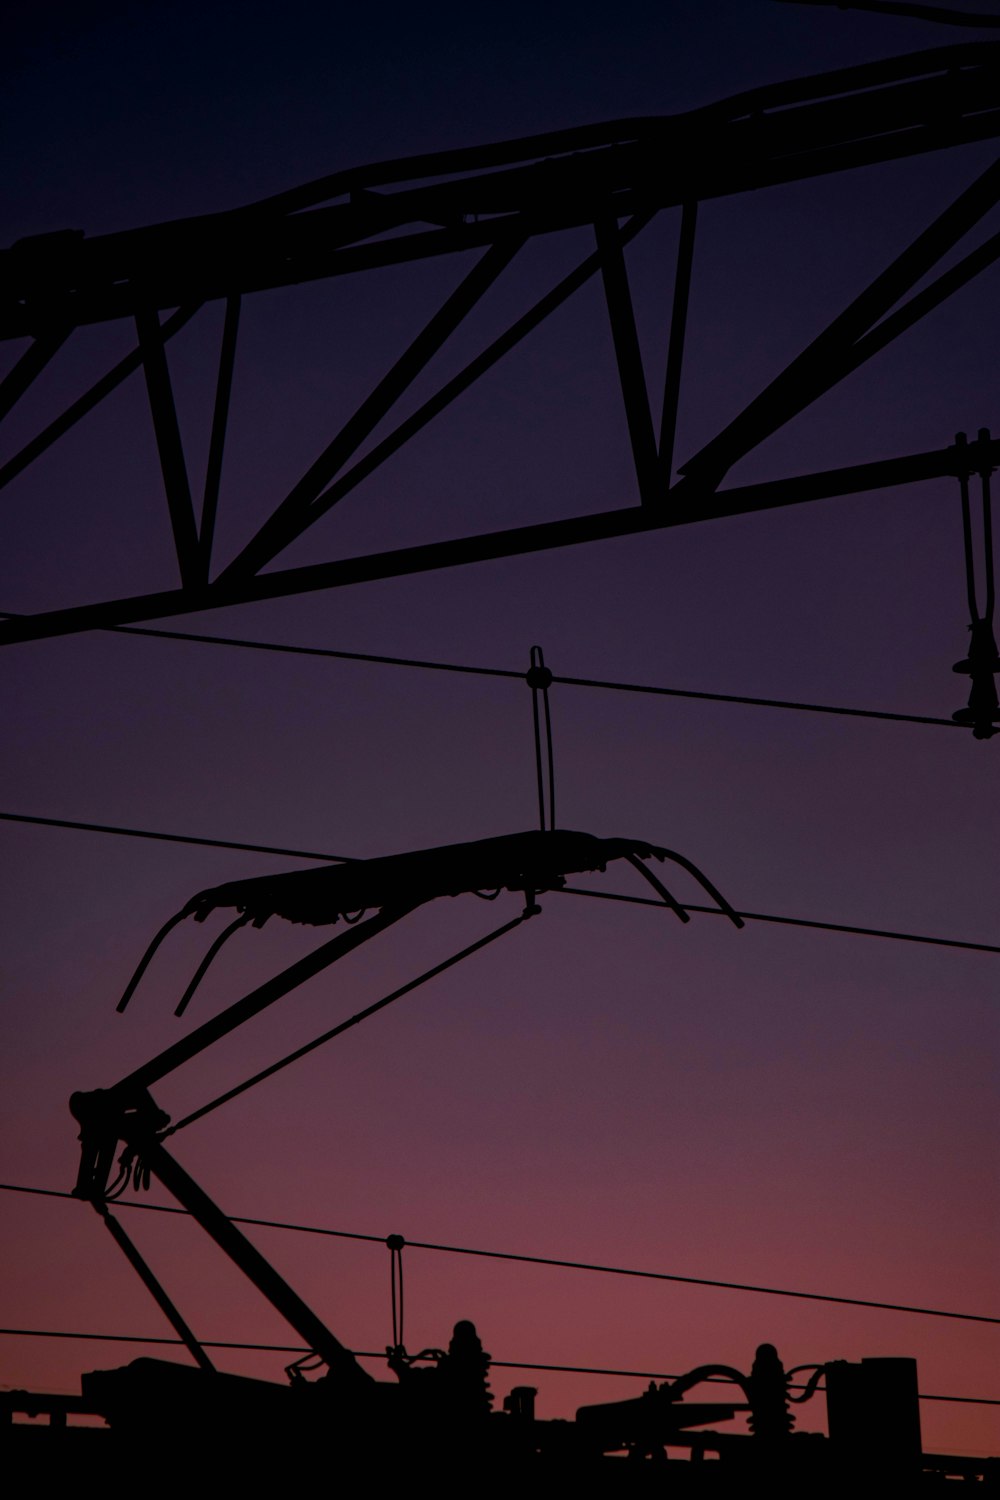 die silhouette von stromleitungen vor einem violetten himmel